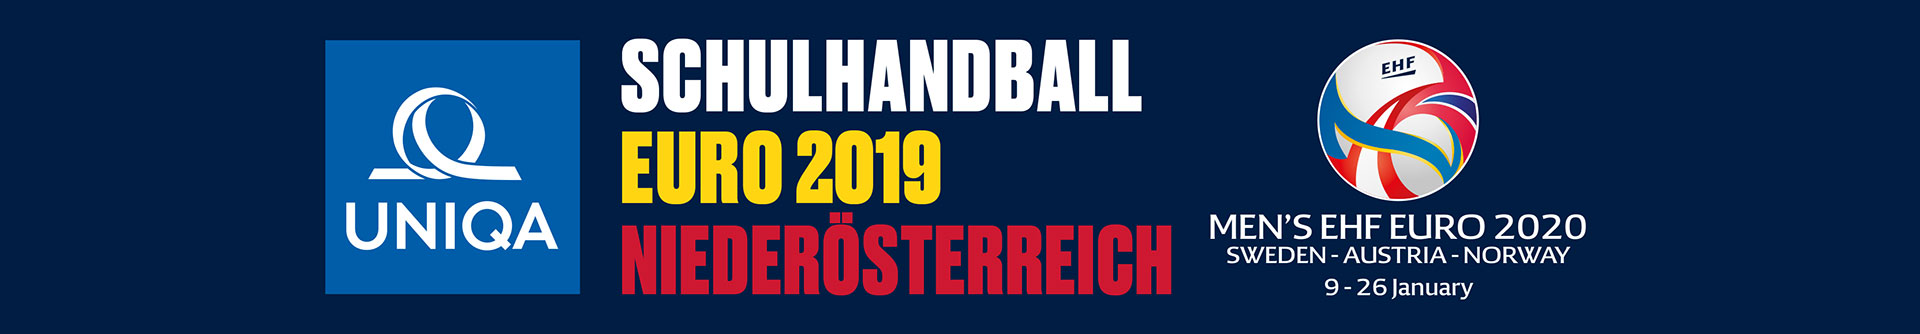 Schulhandball Euro 2019 Niederösterreich